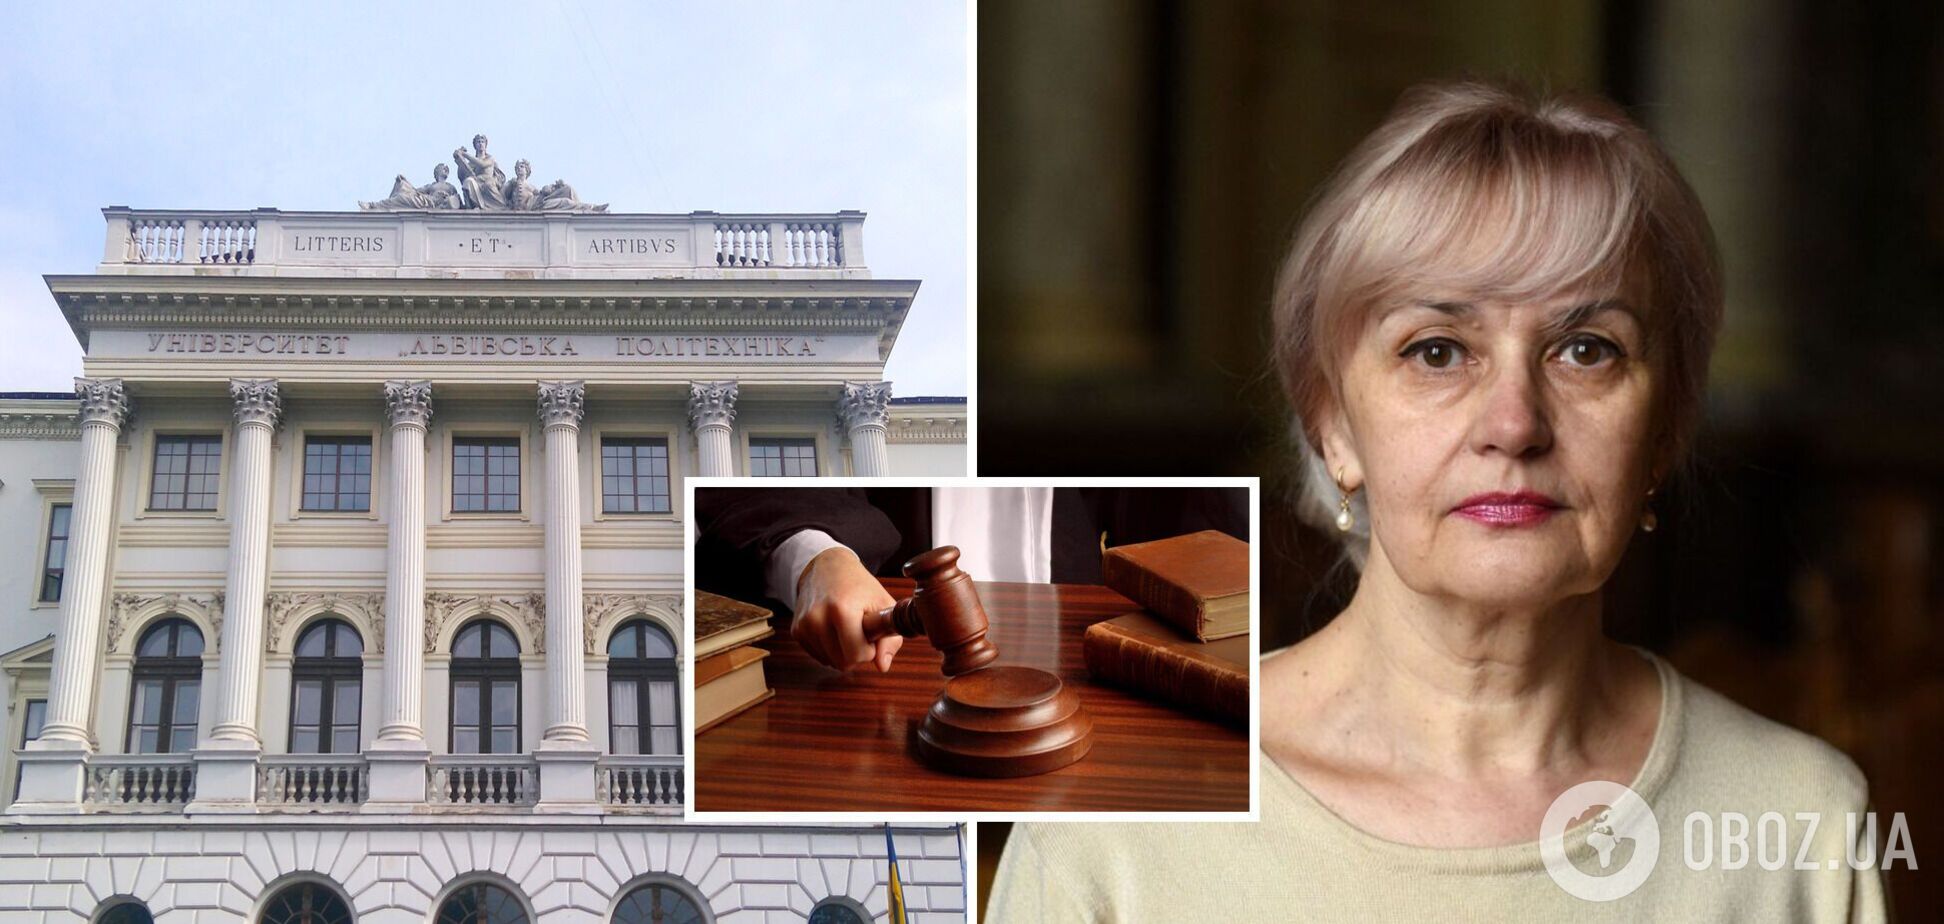 Фаріон після гучного звільнення подала в суд на 'Львівську політехніку'